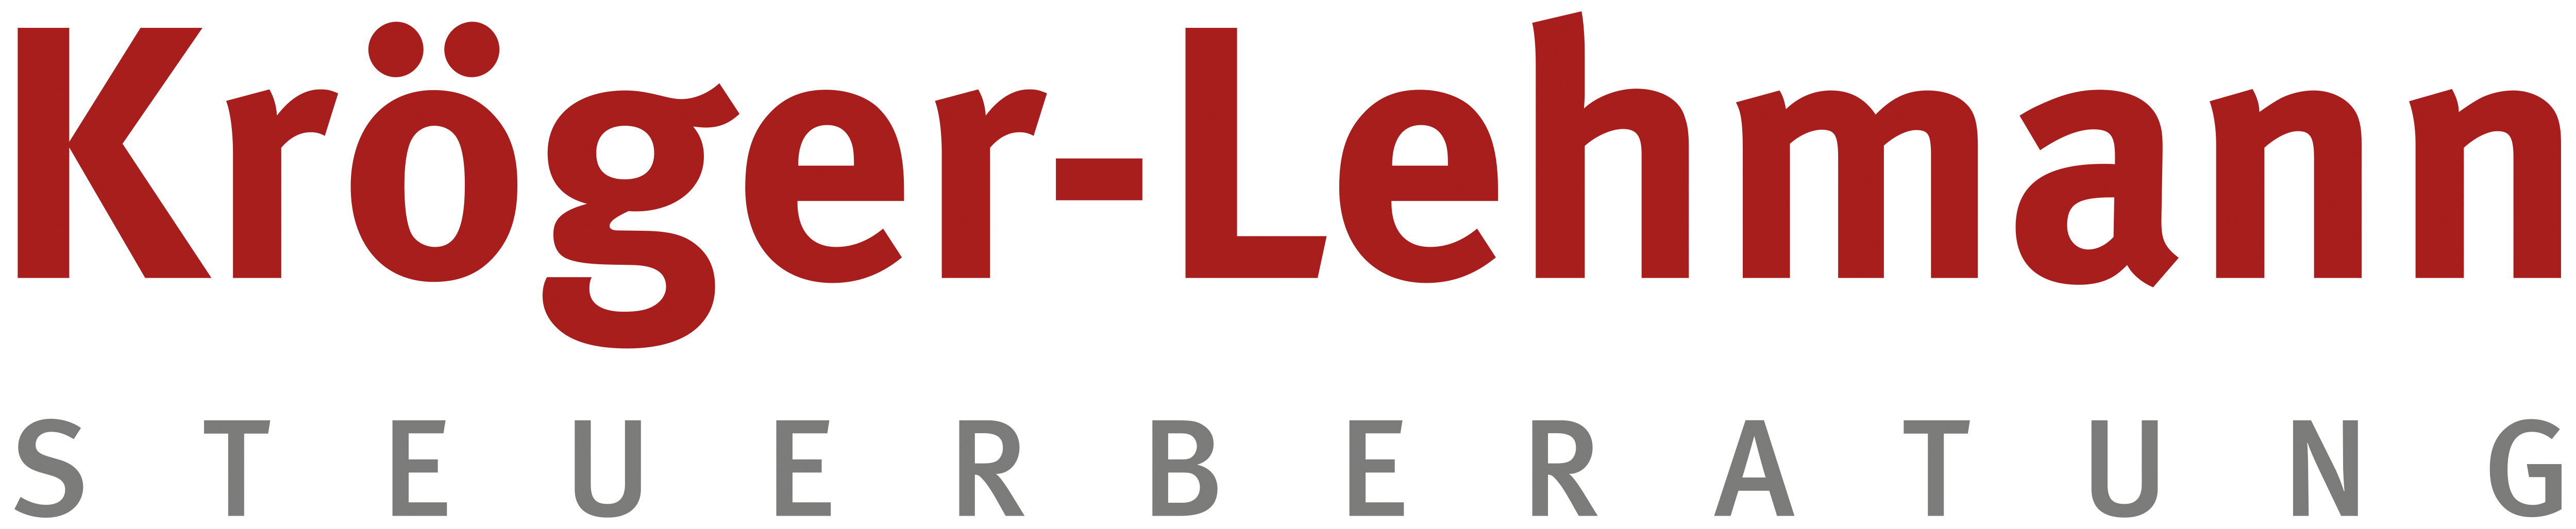 Kröger-Lehmann Steuerberatung Logo